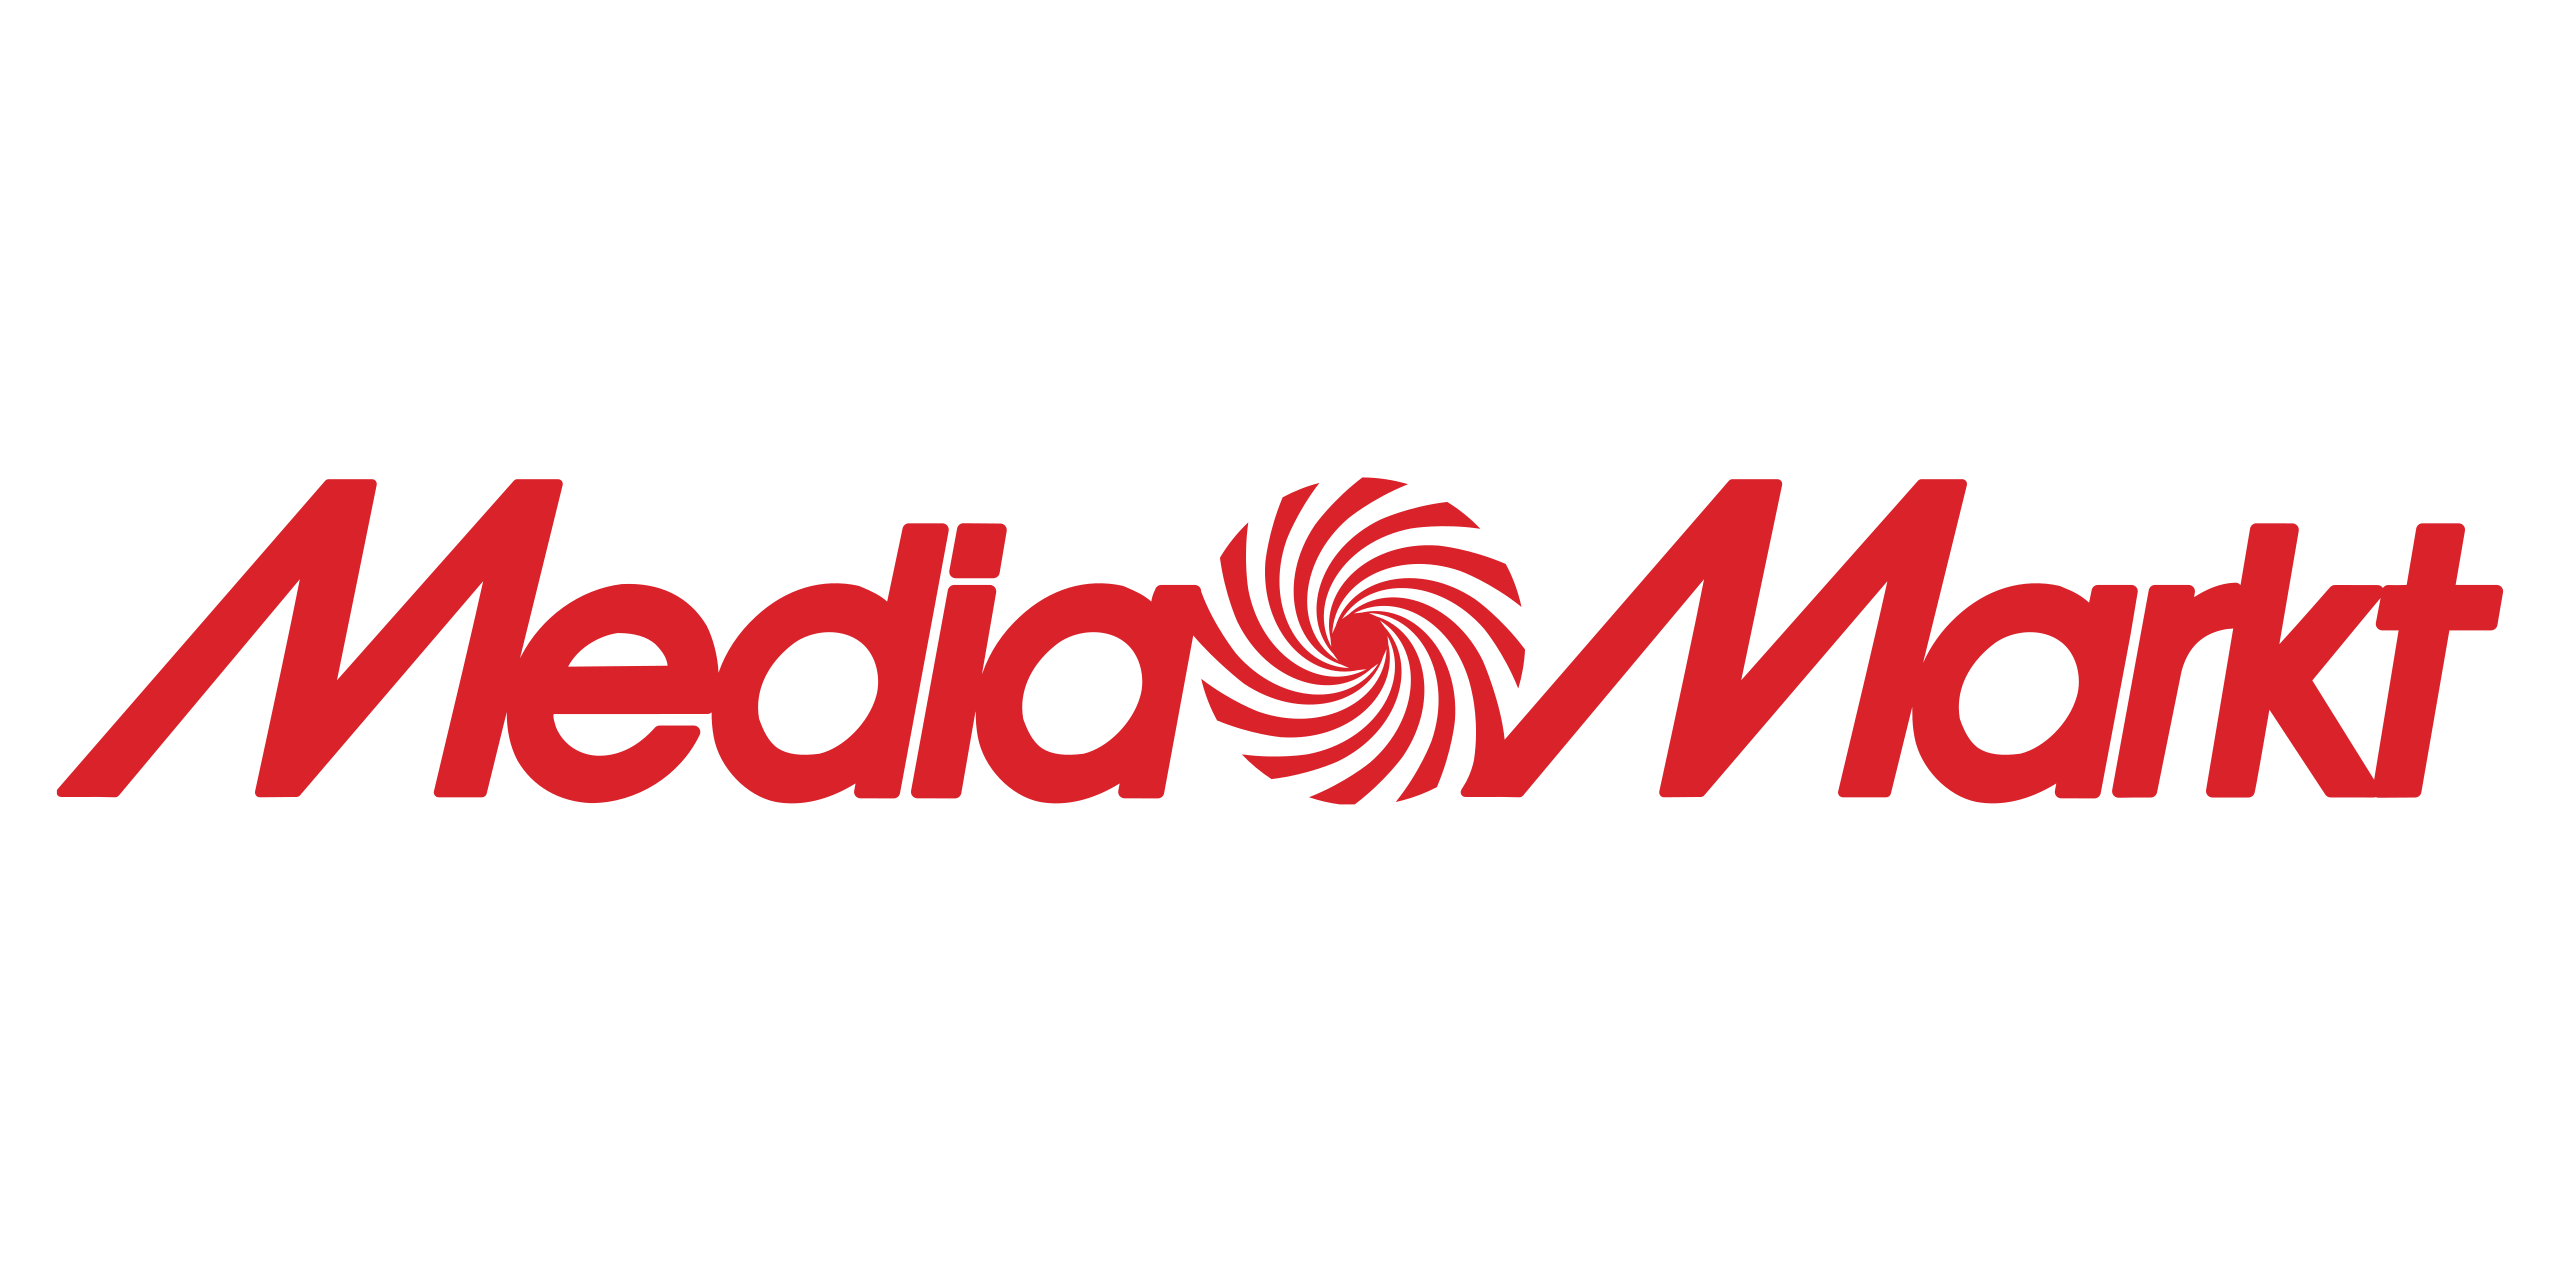 MediaMarkt Black Friday